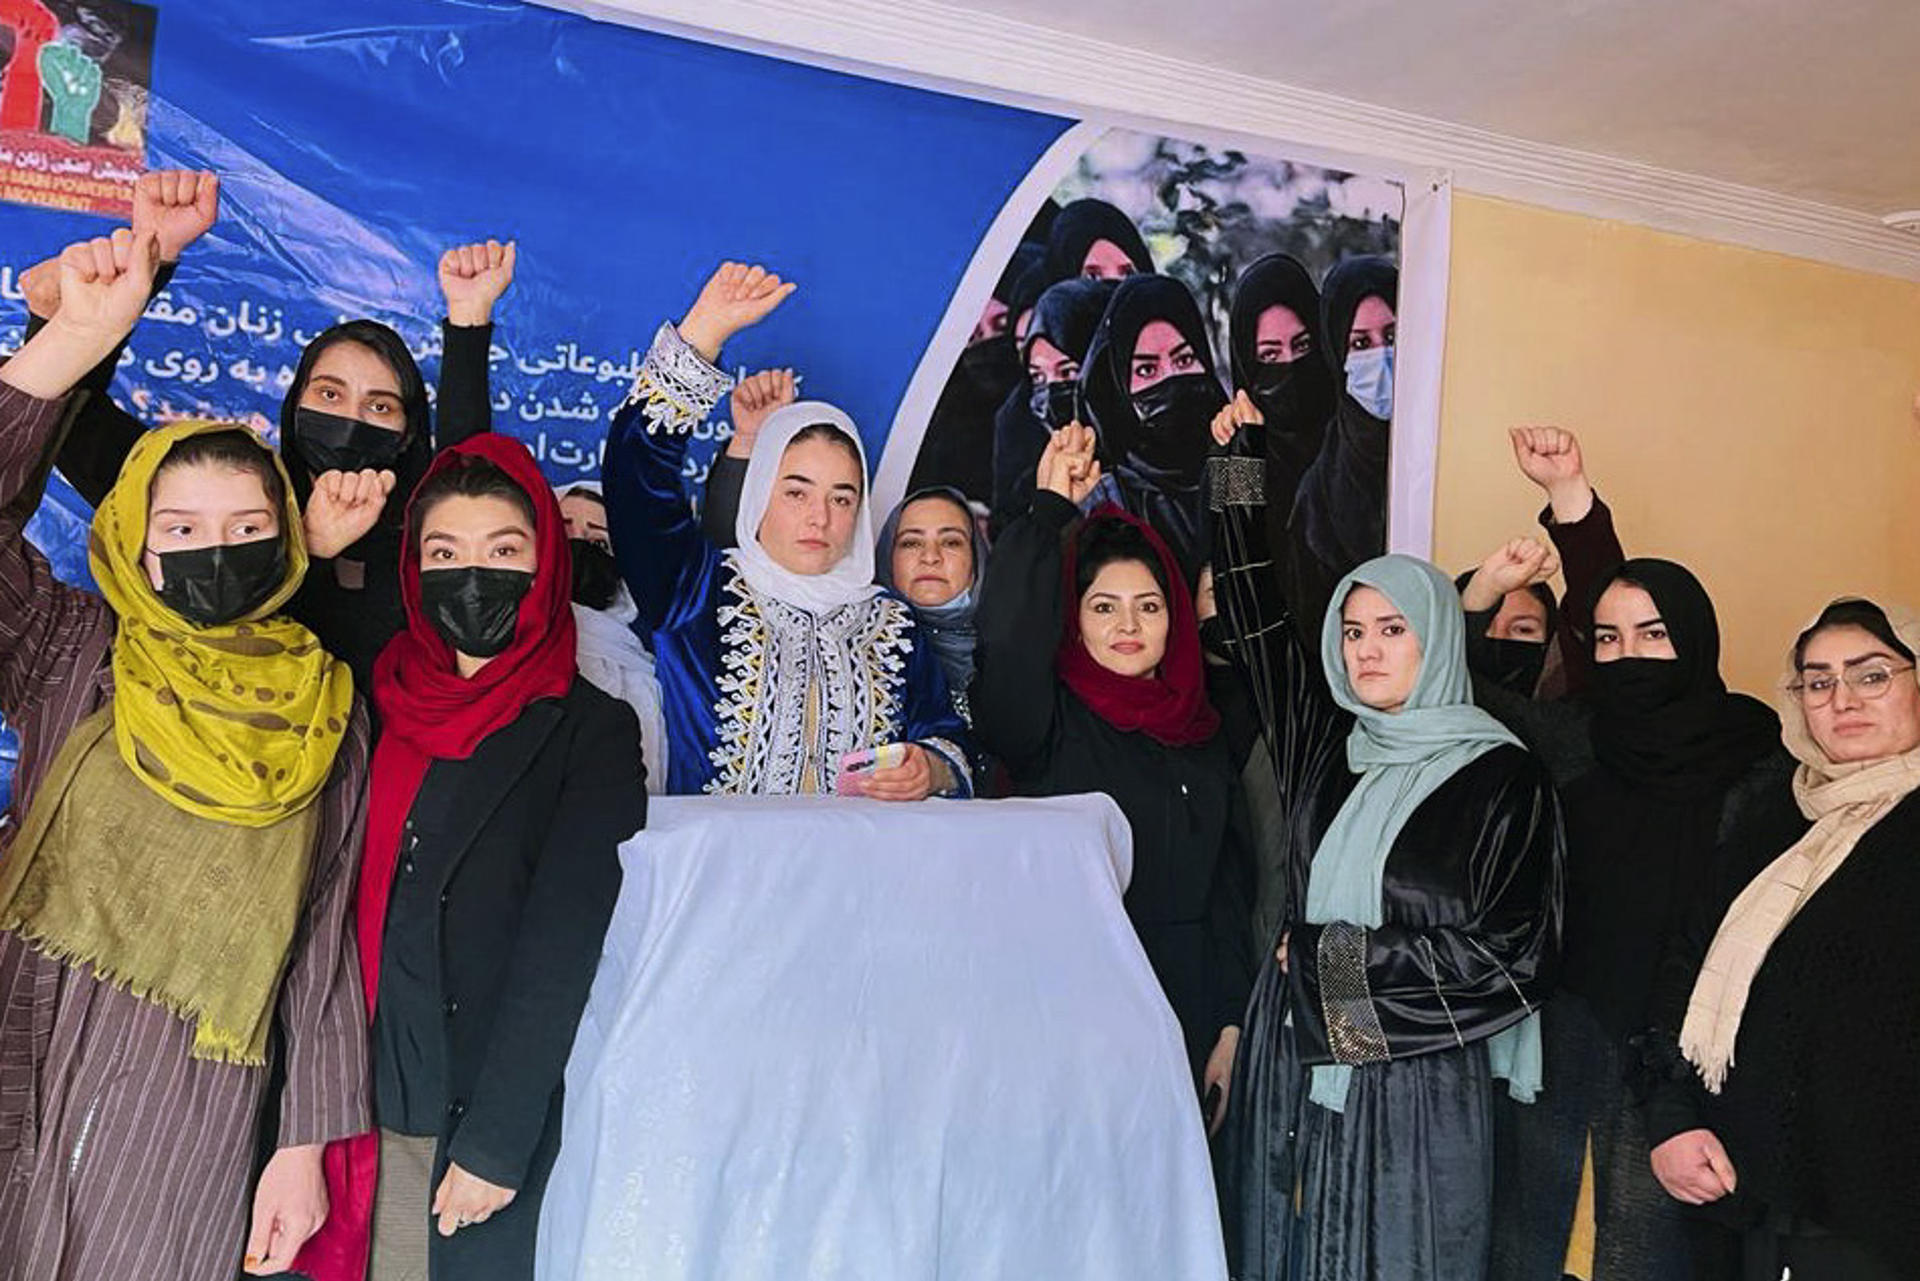 veto-talibanes-mujeres-ong.jpg